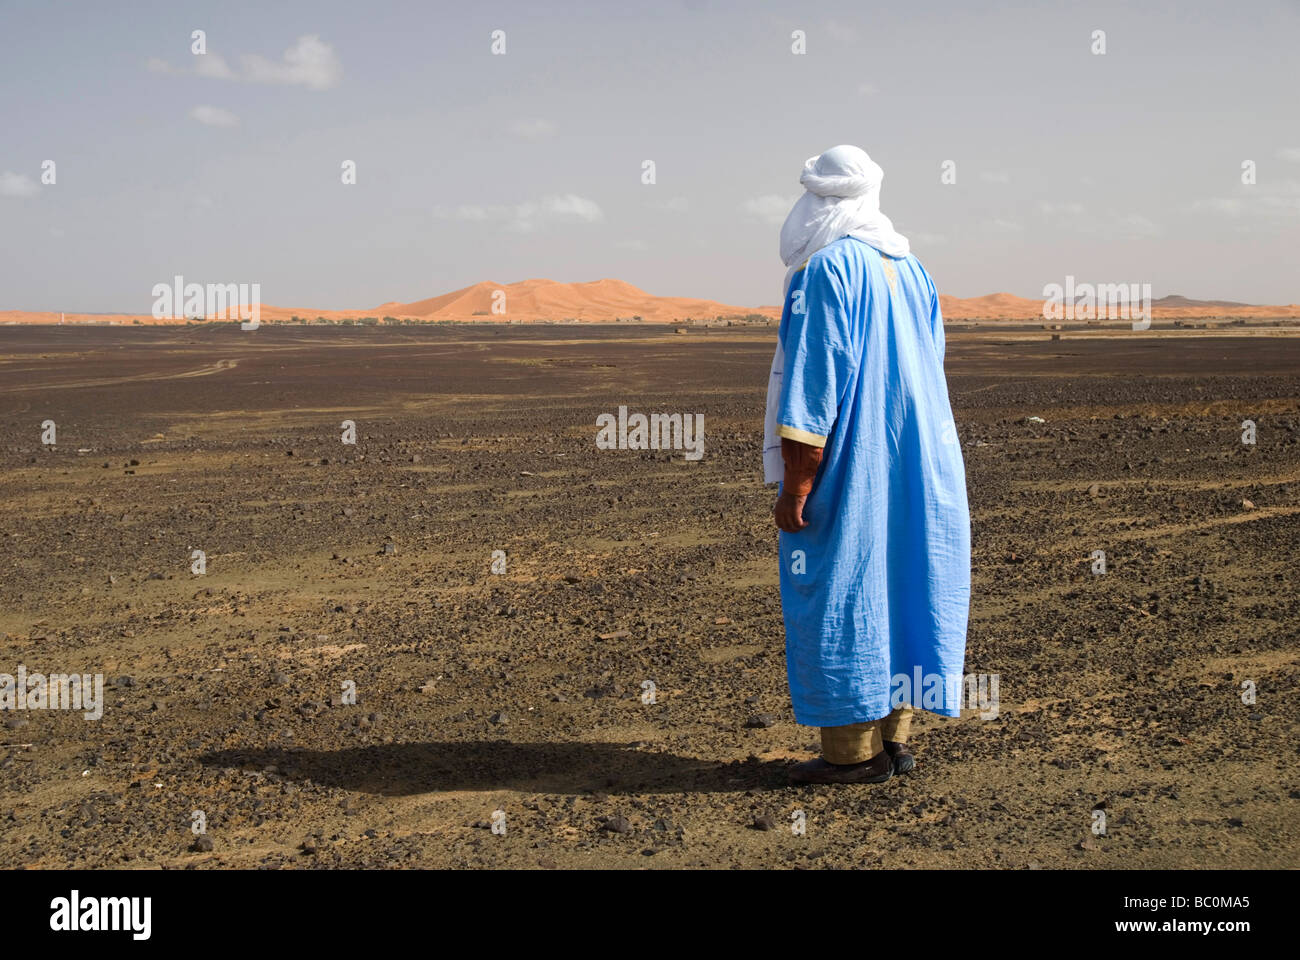 Un homme en costume traditionnel berbère est conduit dans le désert du Sahara, près de Merzouga Maroc Afrique du Nord Banque D'Images